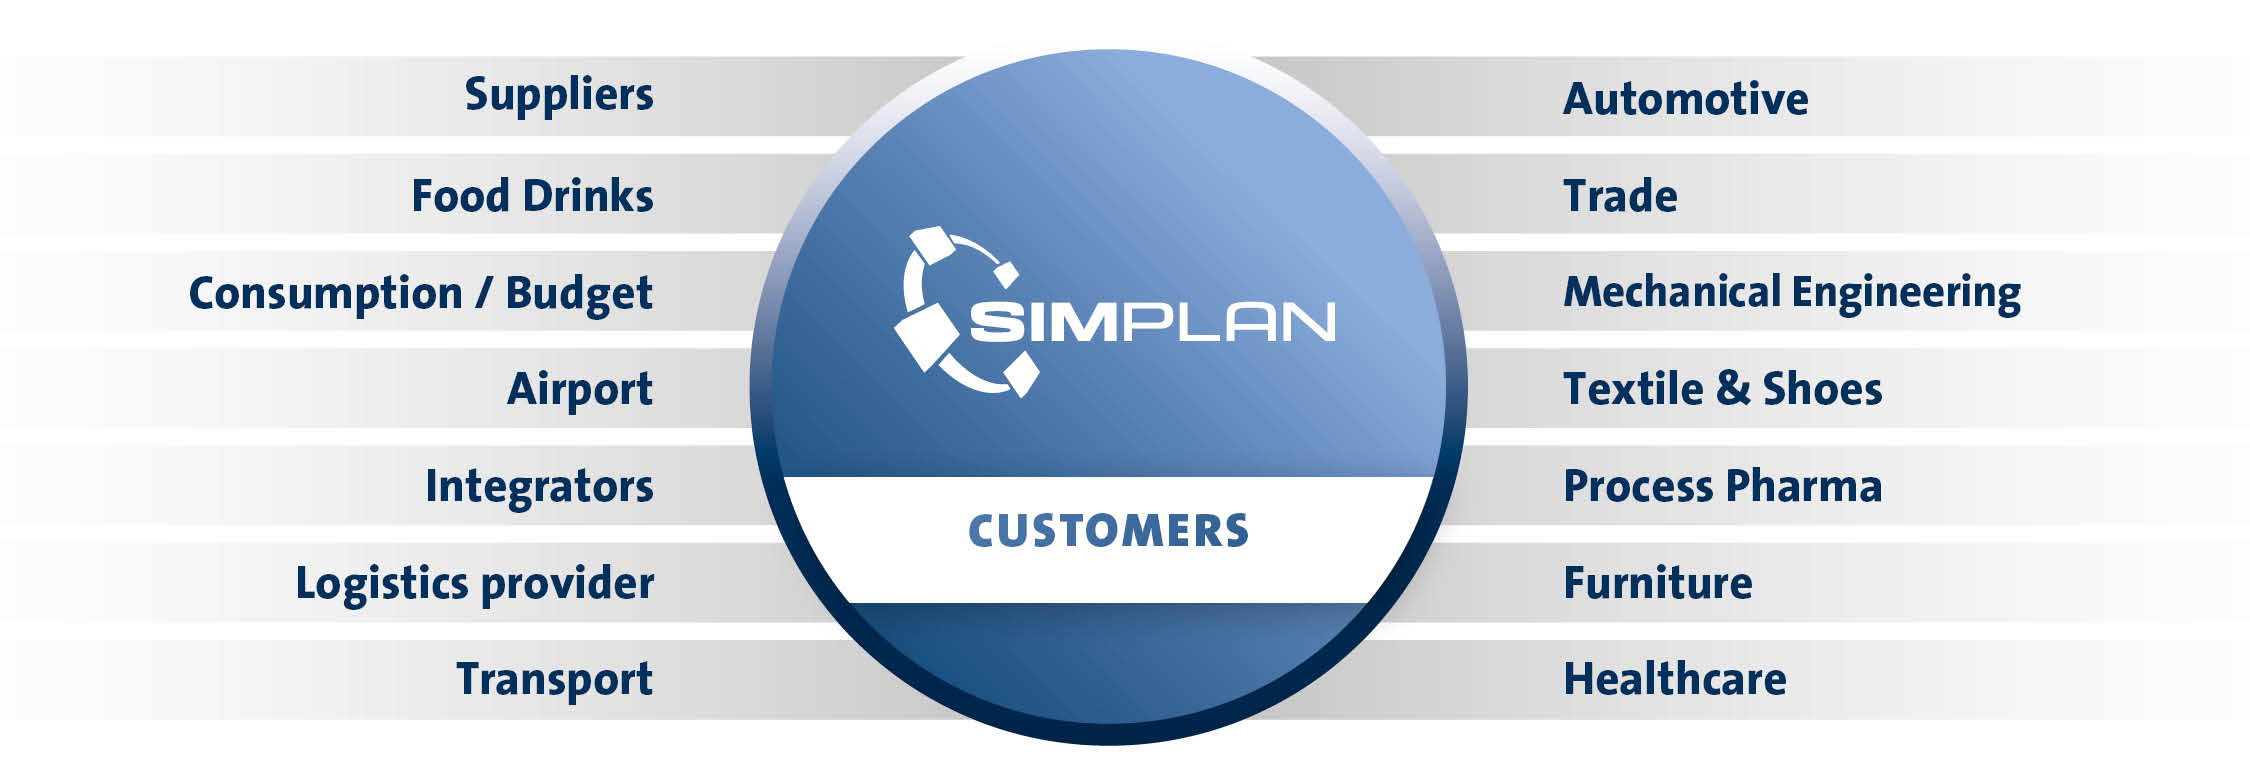 SimPlan_Kunden_Referenzen_ENG